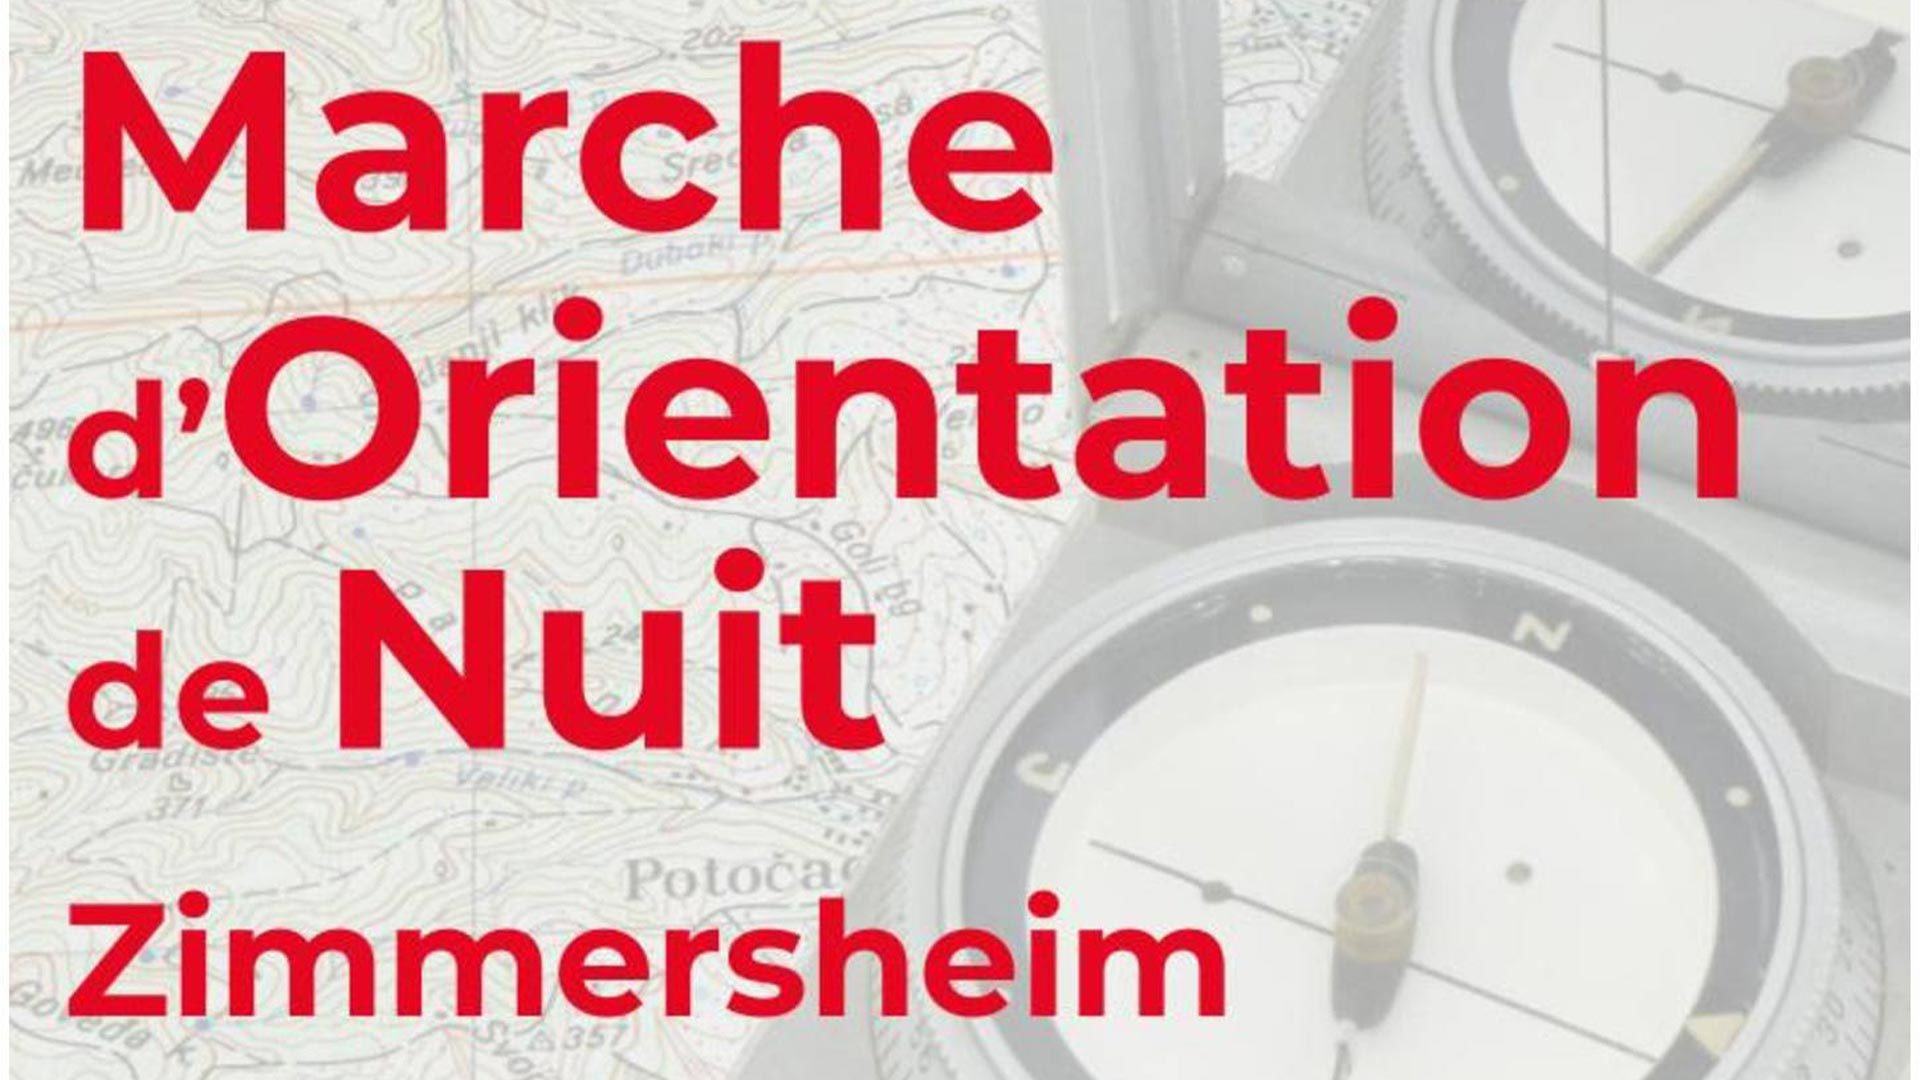 Marche d’Orientation de Nuit à Zimmersheim